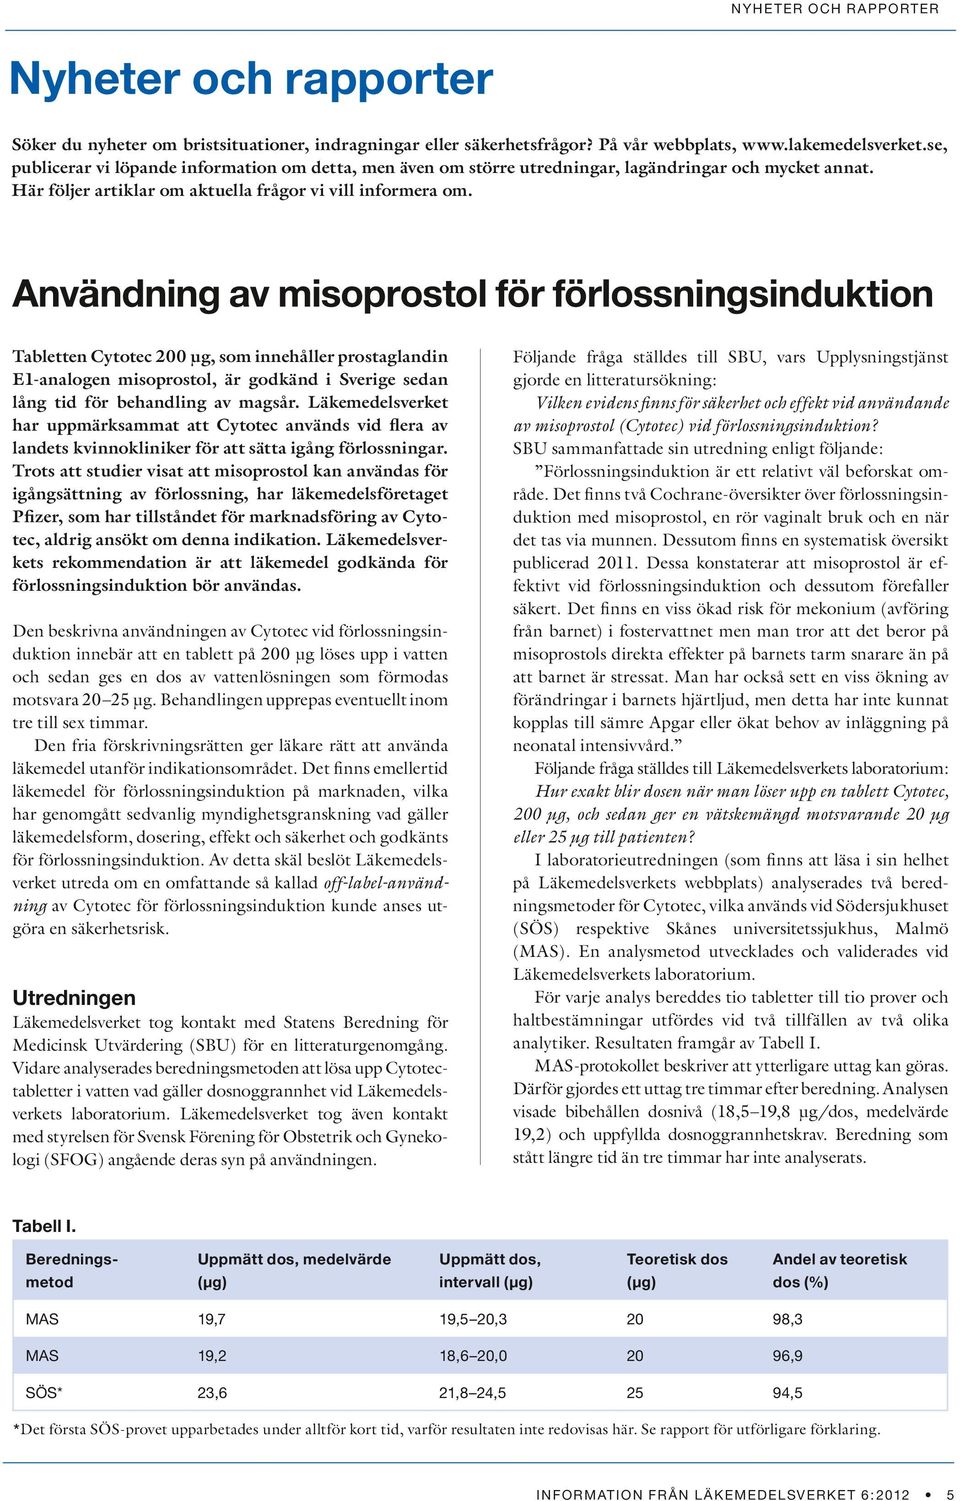 Användning av misoprostol för förlossningsinduktion Tabletten Cytotec 200 µg, som innehåller prostaglandin E1-analogen misoprostol, är godkänd i Sverige sedan lång tid för behandling av magsår.